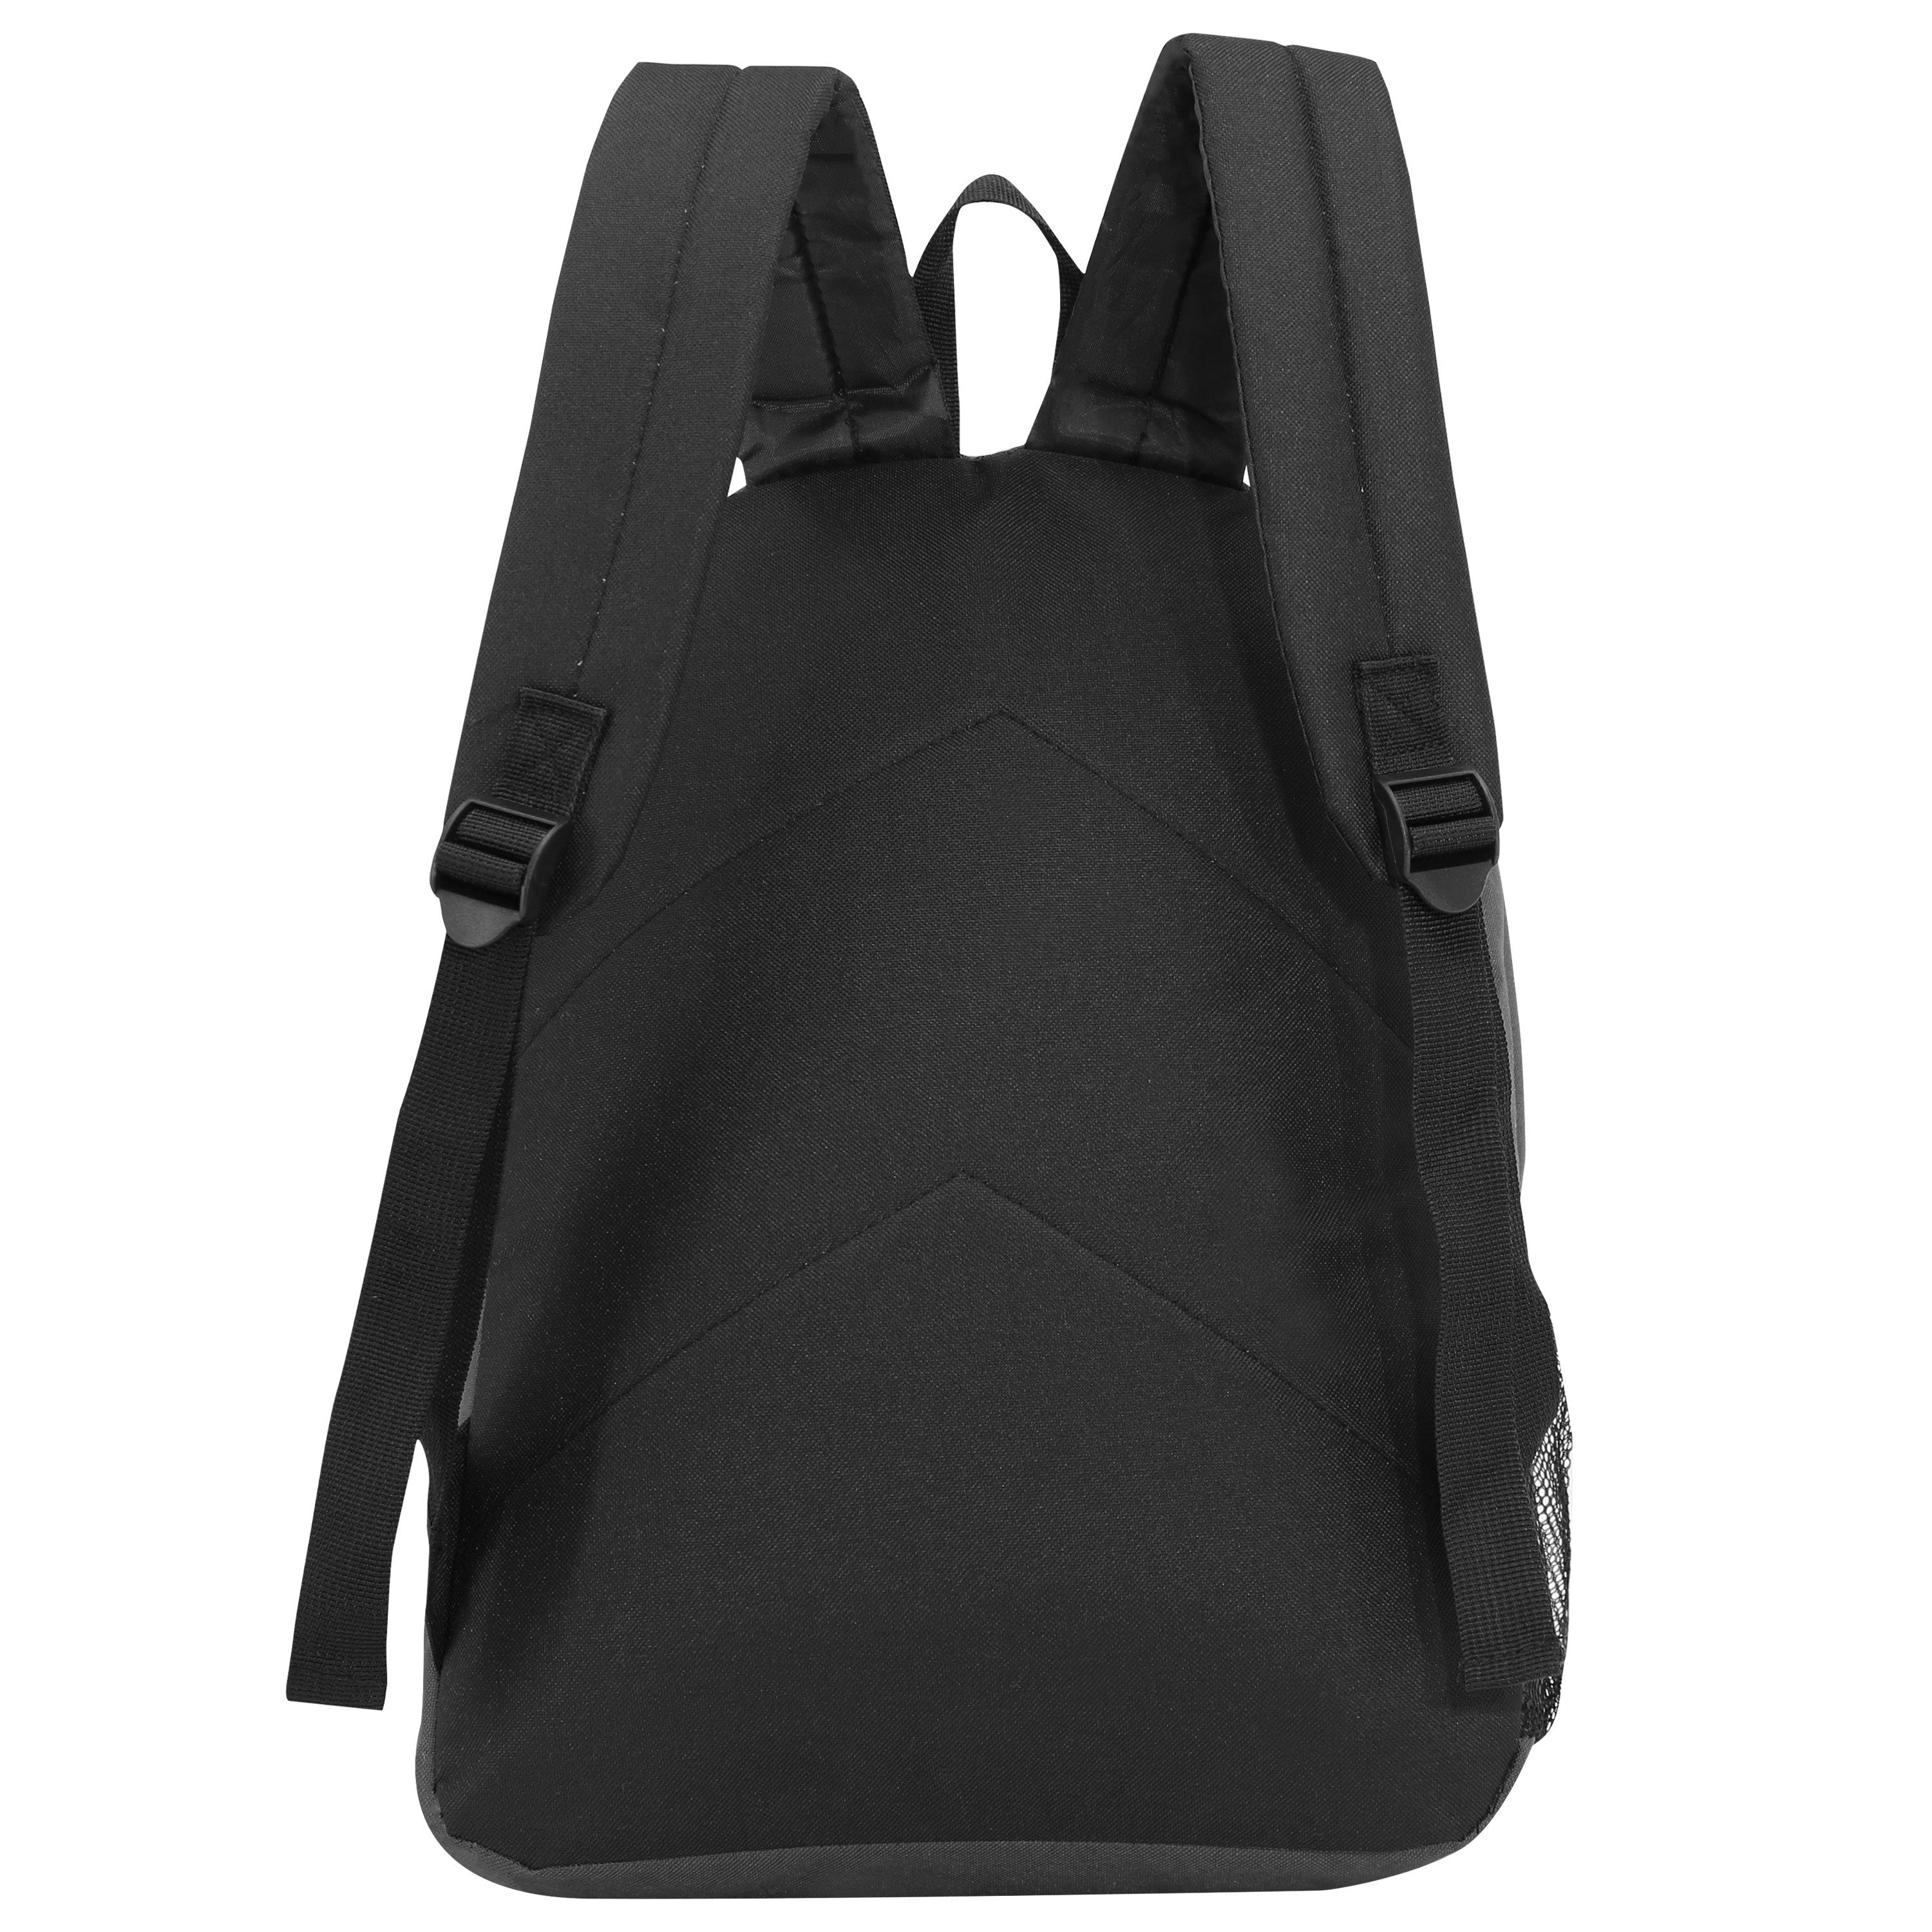 17" Kids Wholesale Backpacks In Black - Wholesale Case of 24 School Bookbags